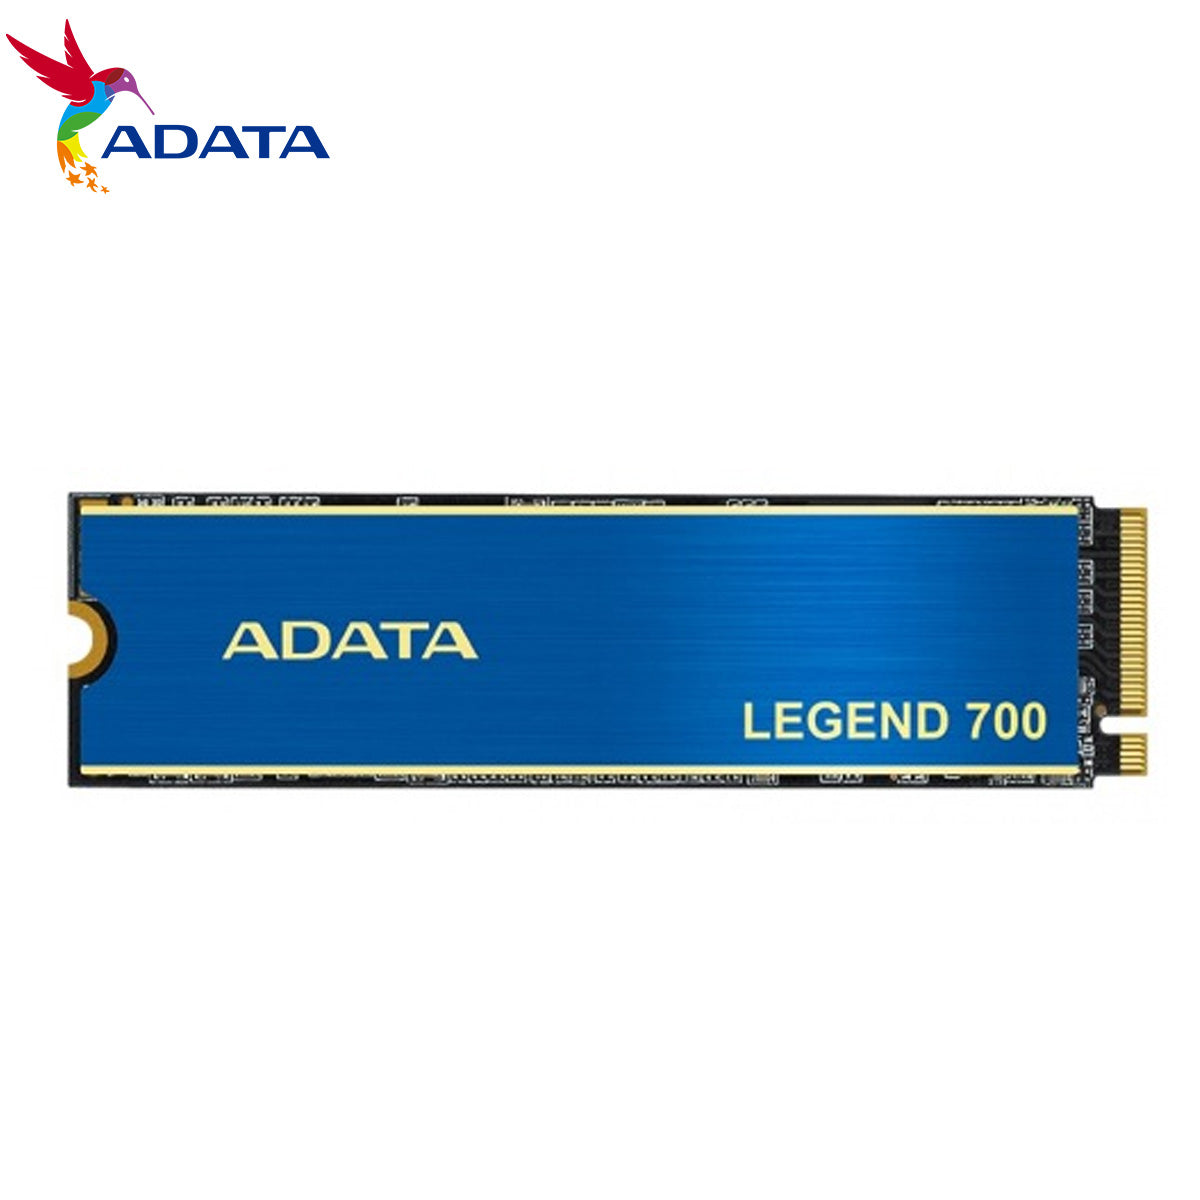 ADATA ALEG-700-1TCS Legend 700 1TB M.2 PCIe 3.0 x4